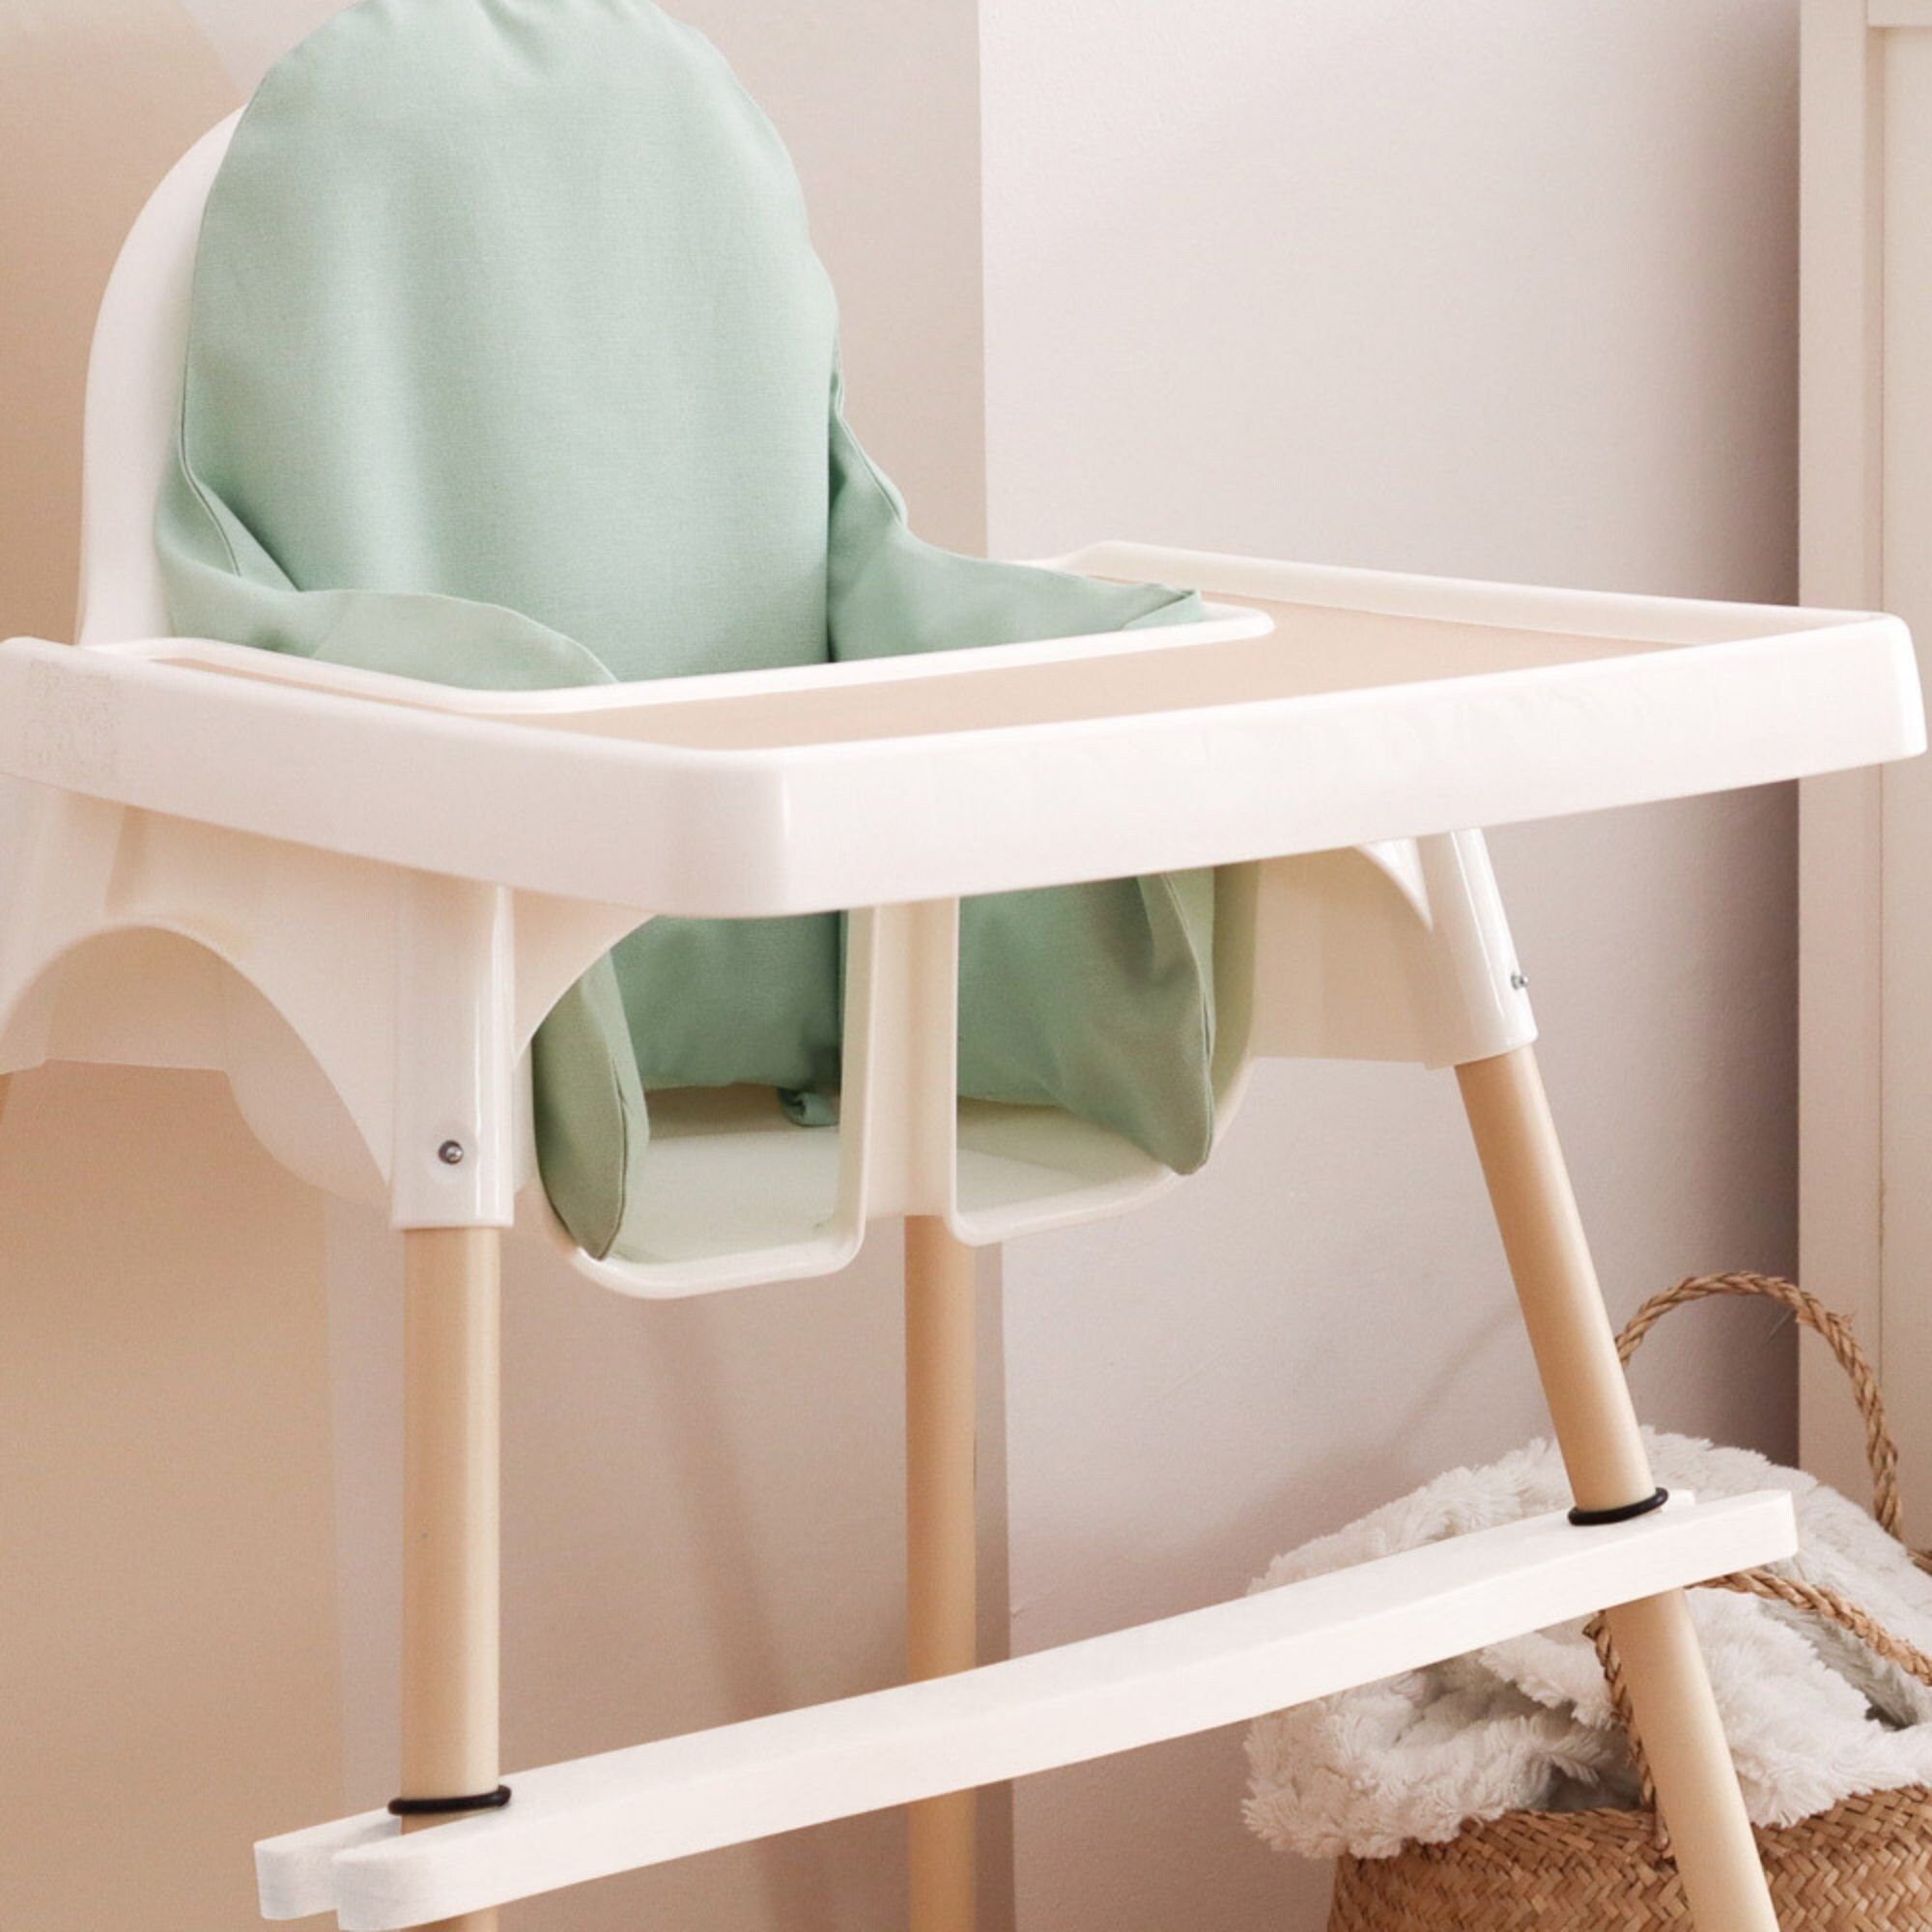 Reposapiés para silla alta compatible con IKEA Antilop, paquete de 2  reposapiés de madera de bambú, accesorios para silla alta, bordes alisados